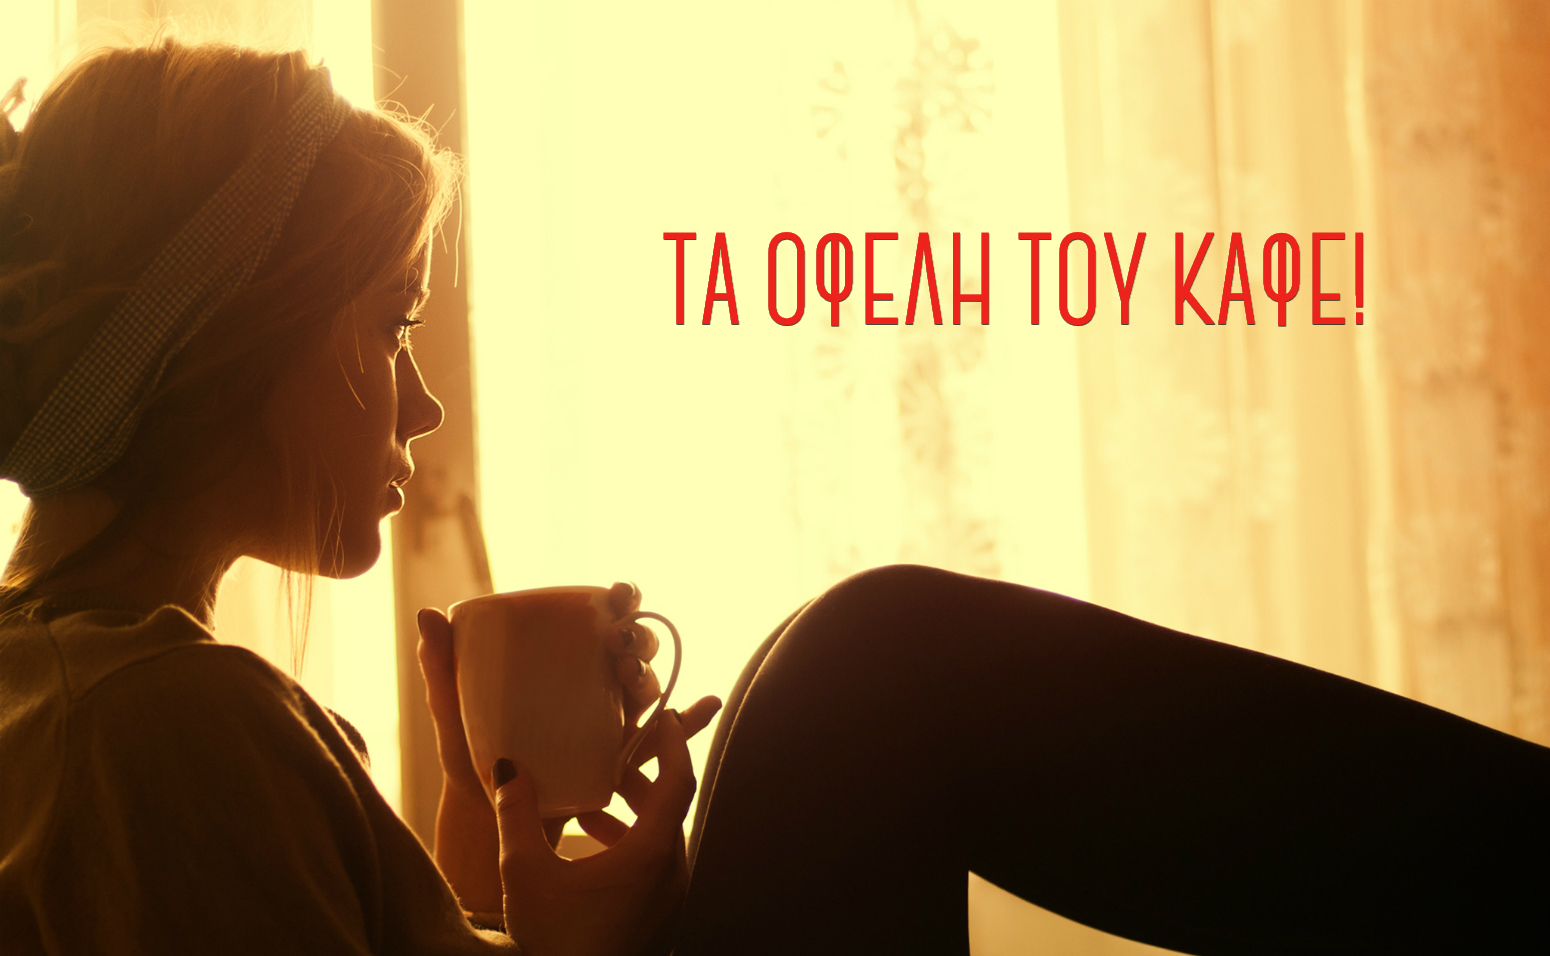 Ο καφές και η υγεία μας! - Κωτσόβολος Blog